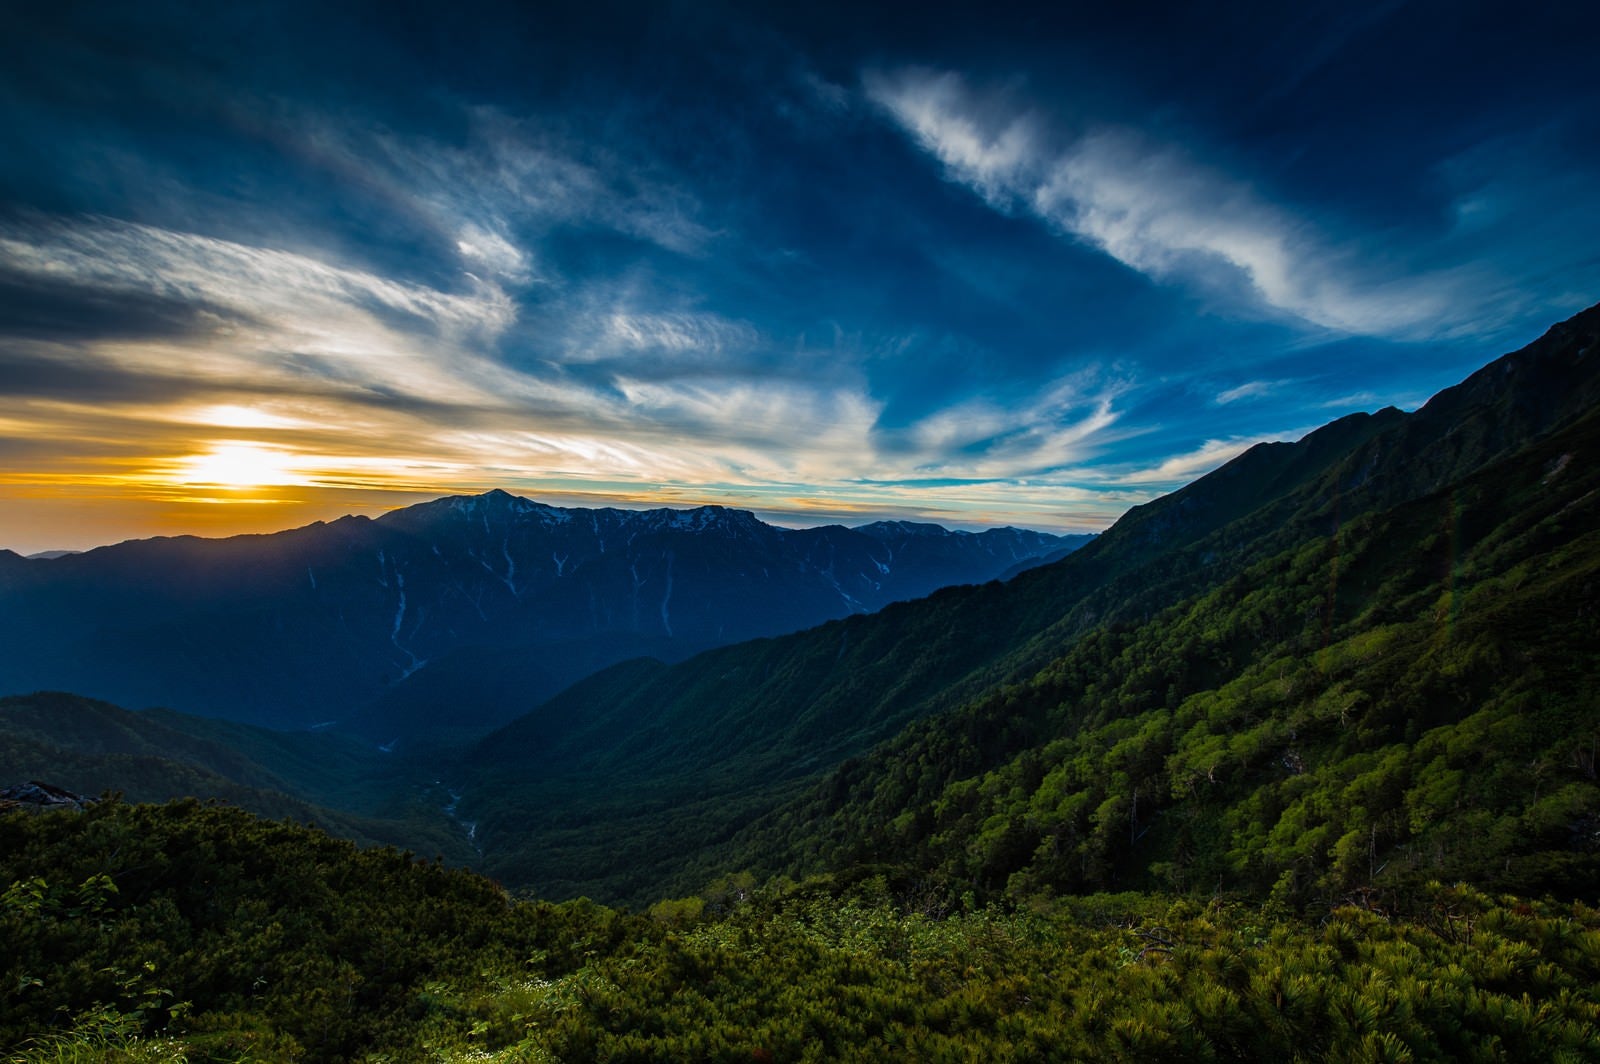 「夕暮れの西穂高岳から望む飛騨山脈の名峰笠ヶ岳」の写真